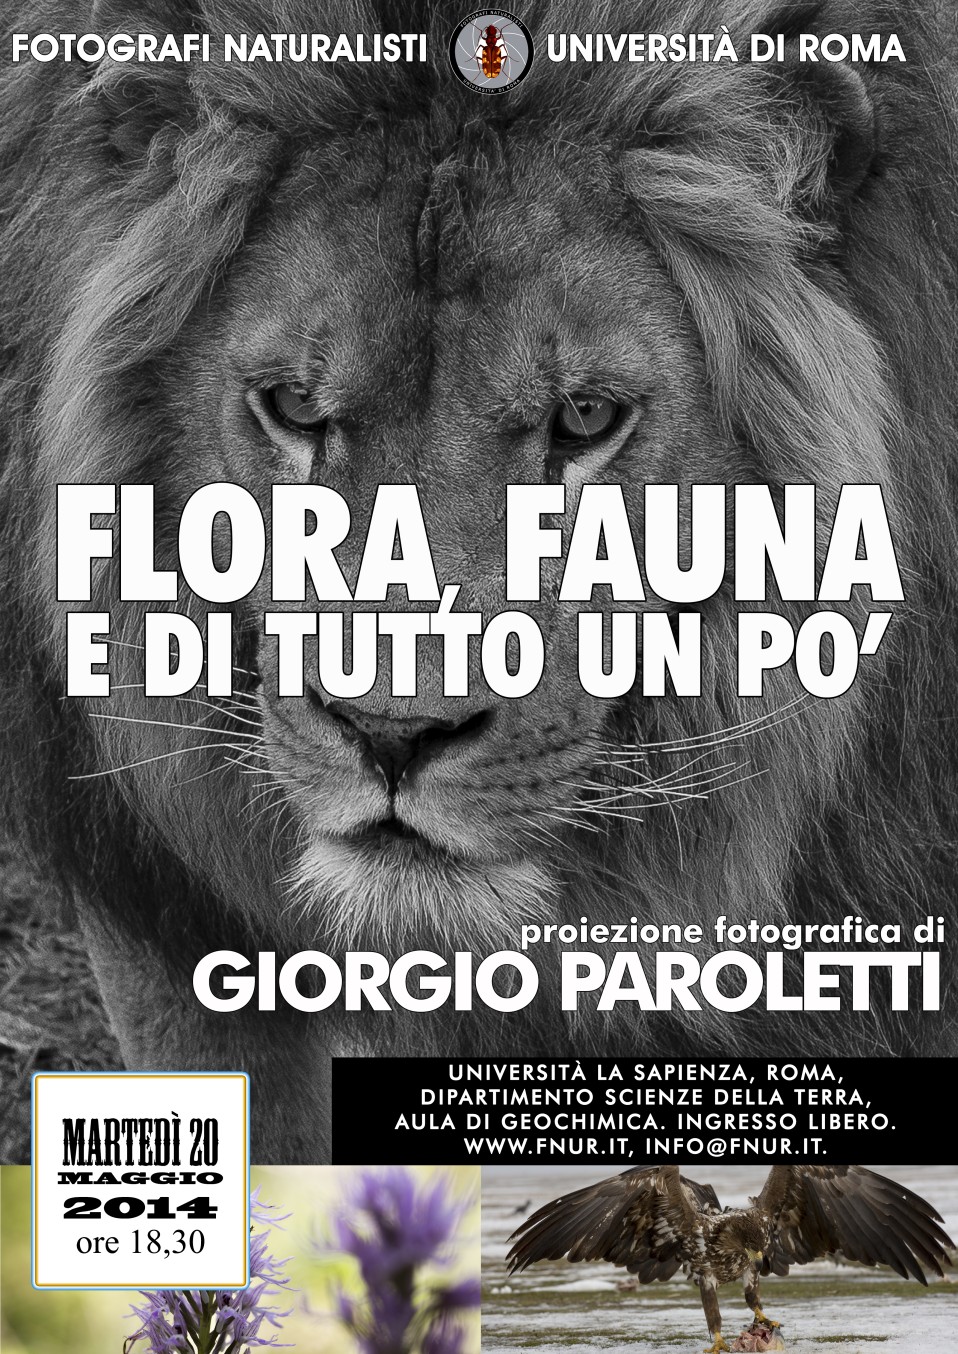 20 maggio 2014 – Giorgio Paroletti